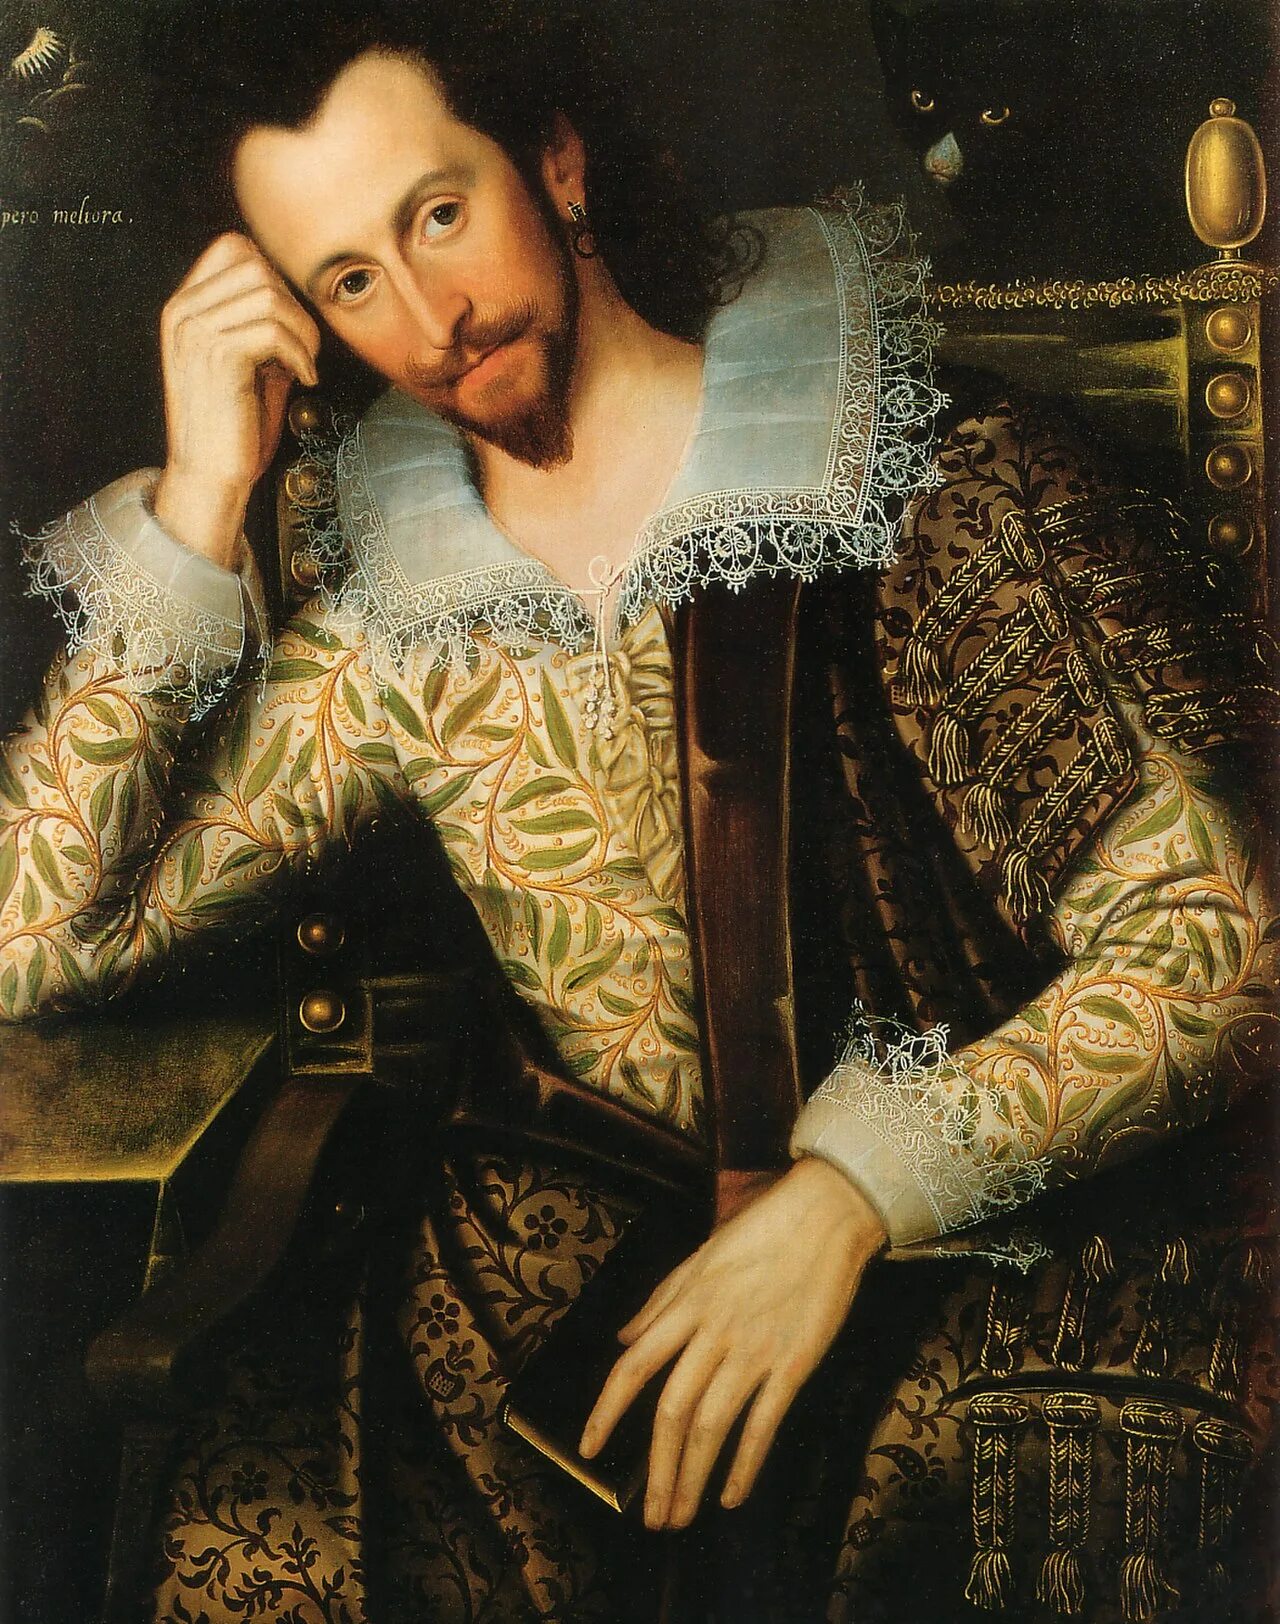 Личности эпохи ренессанса. Мужской портрет Ренессанс. Поурбус Франс старший мужской портрет. Гольбейн 16 век картины мужской портрет. Испанские принцы 16 век.